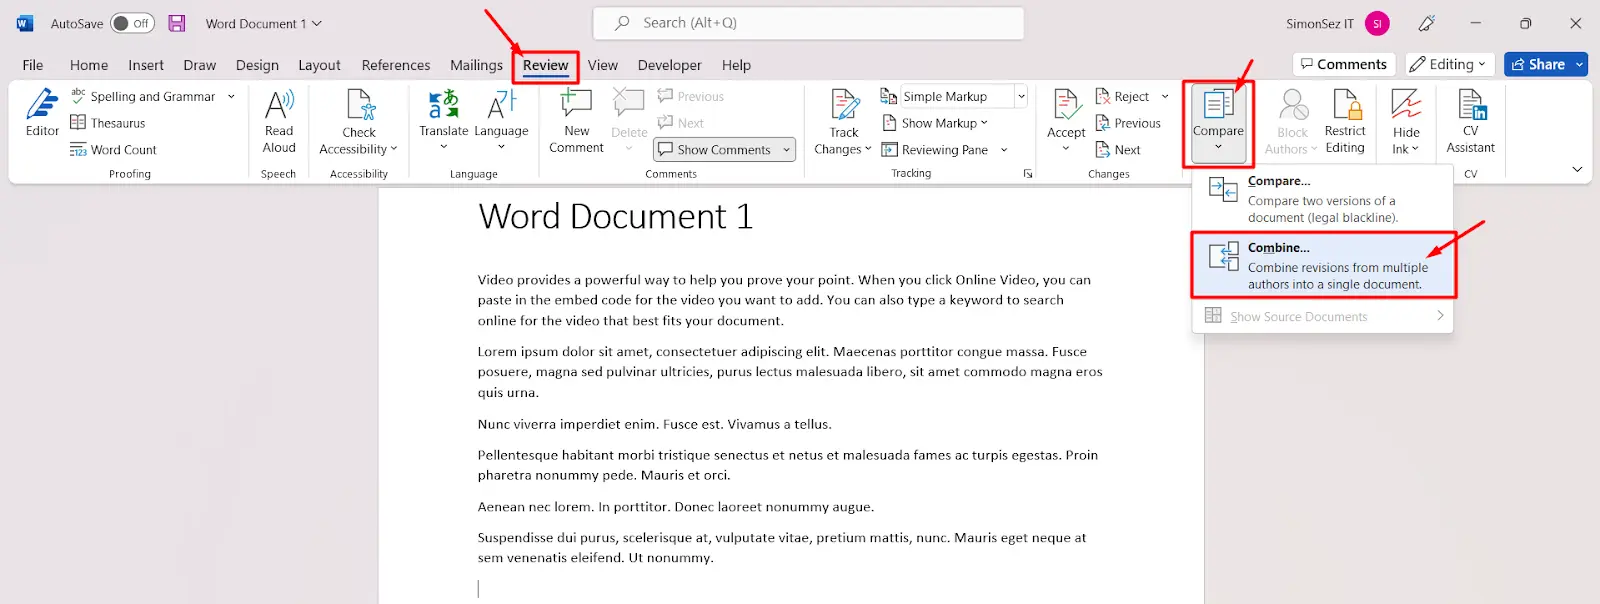 Cara Menggabungkan File Word dengan Fitur Compare dan Combine